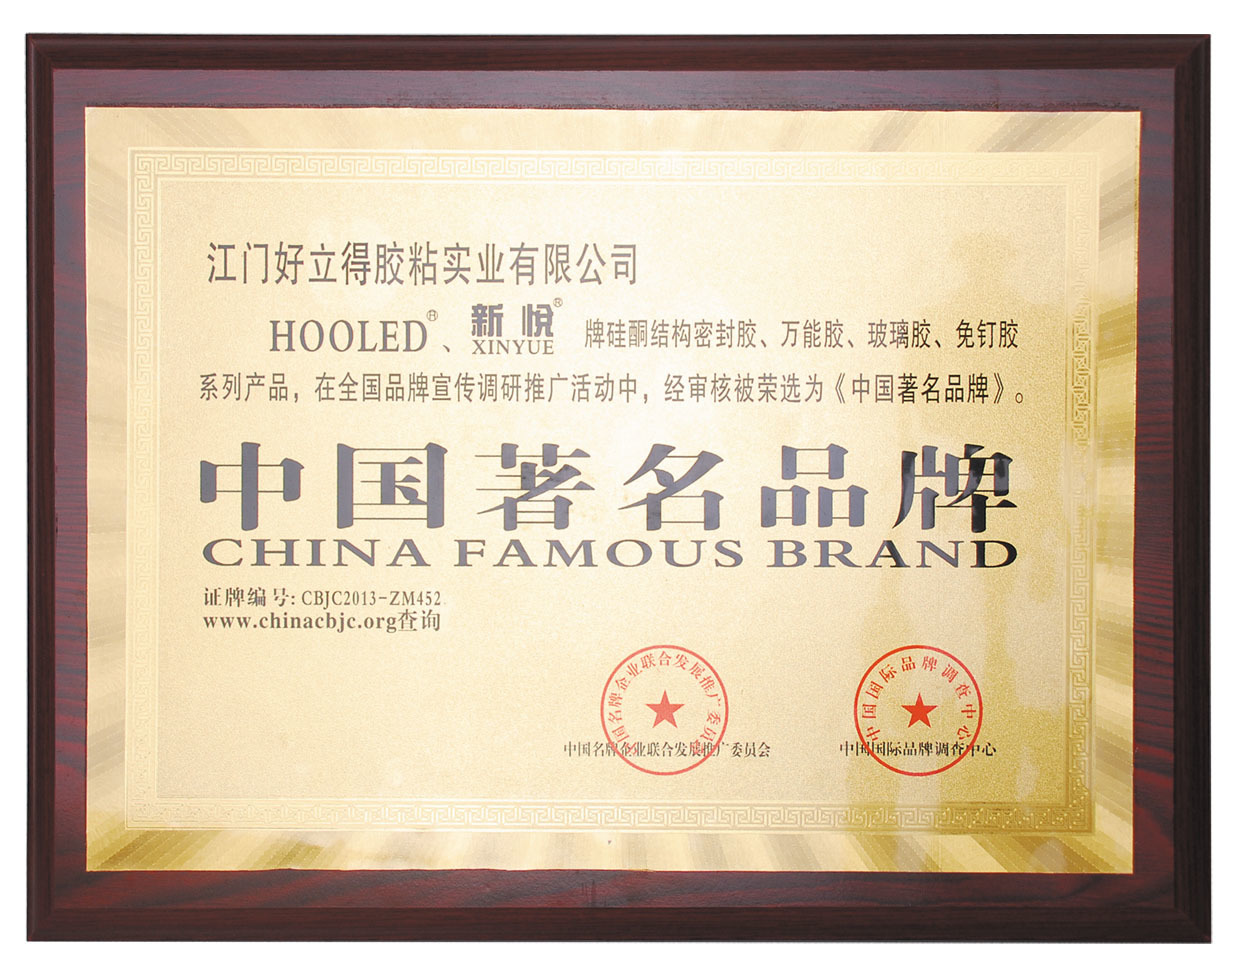 江门好立得胶粘实业有限公司通过ISO9001：2008国际质量管理体系认证。荣获“中国著名品牌”称号。